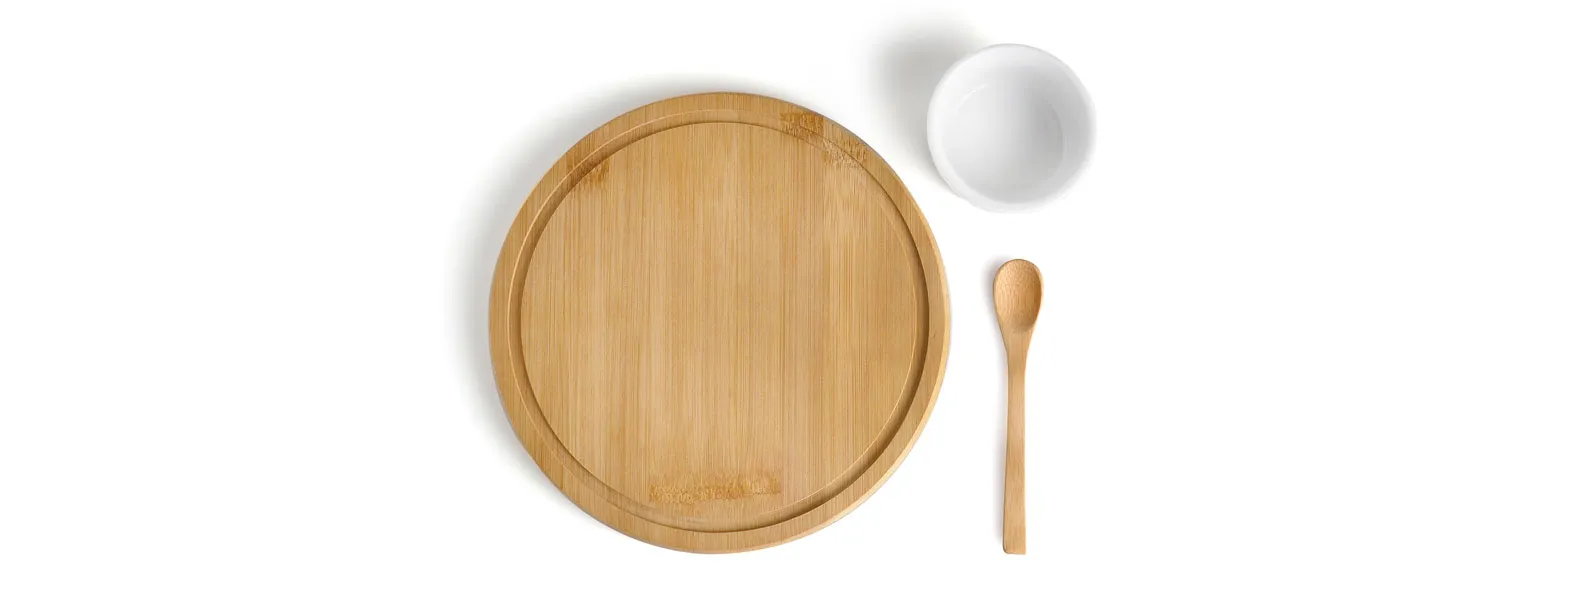 Conjunto para petiscos em bambu. Acompanha tábua e colher em bambu, conta também com ramekin e porcelana.